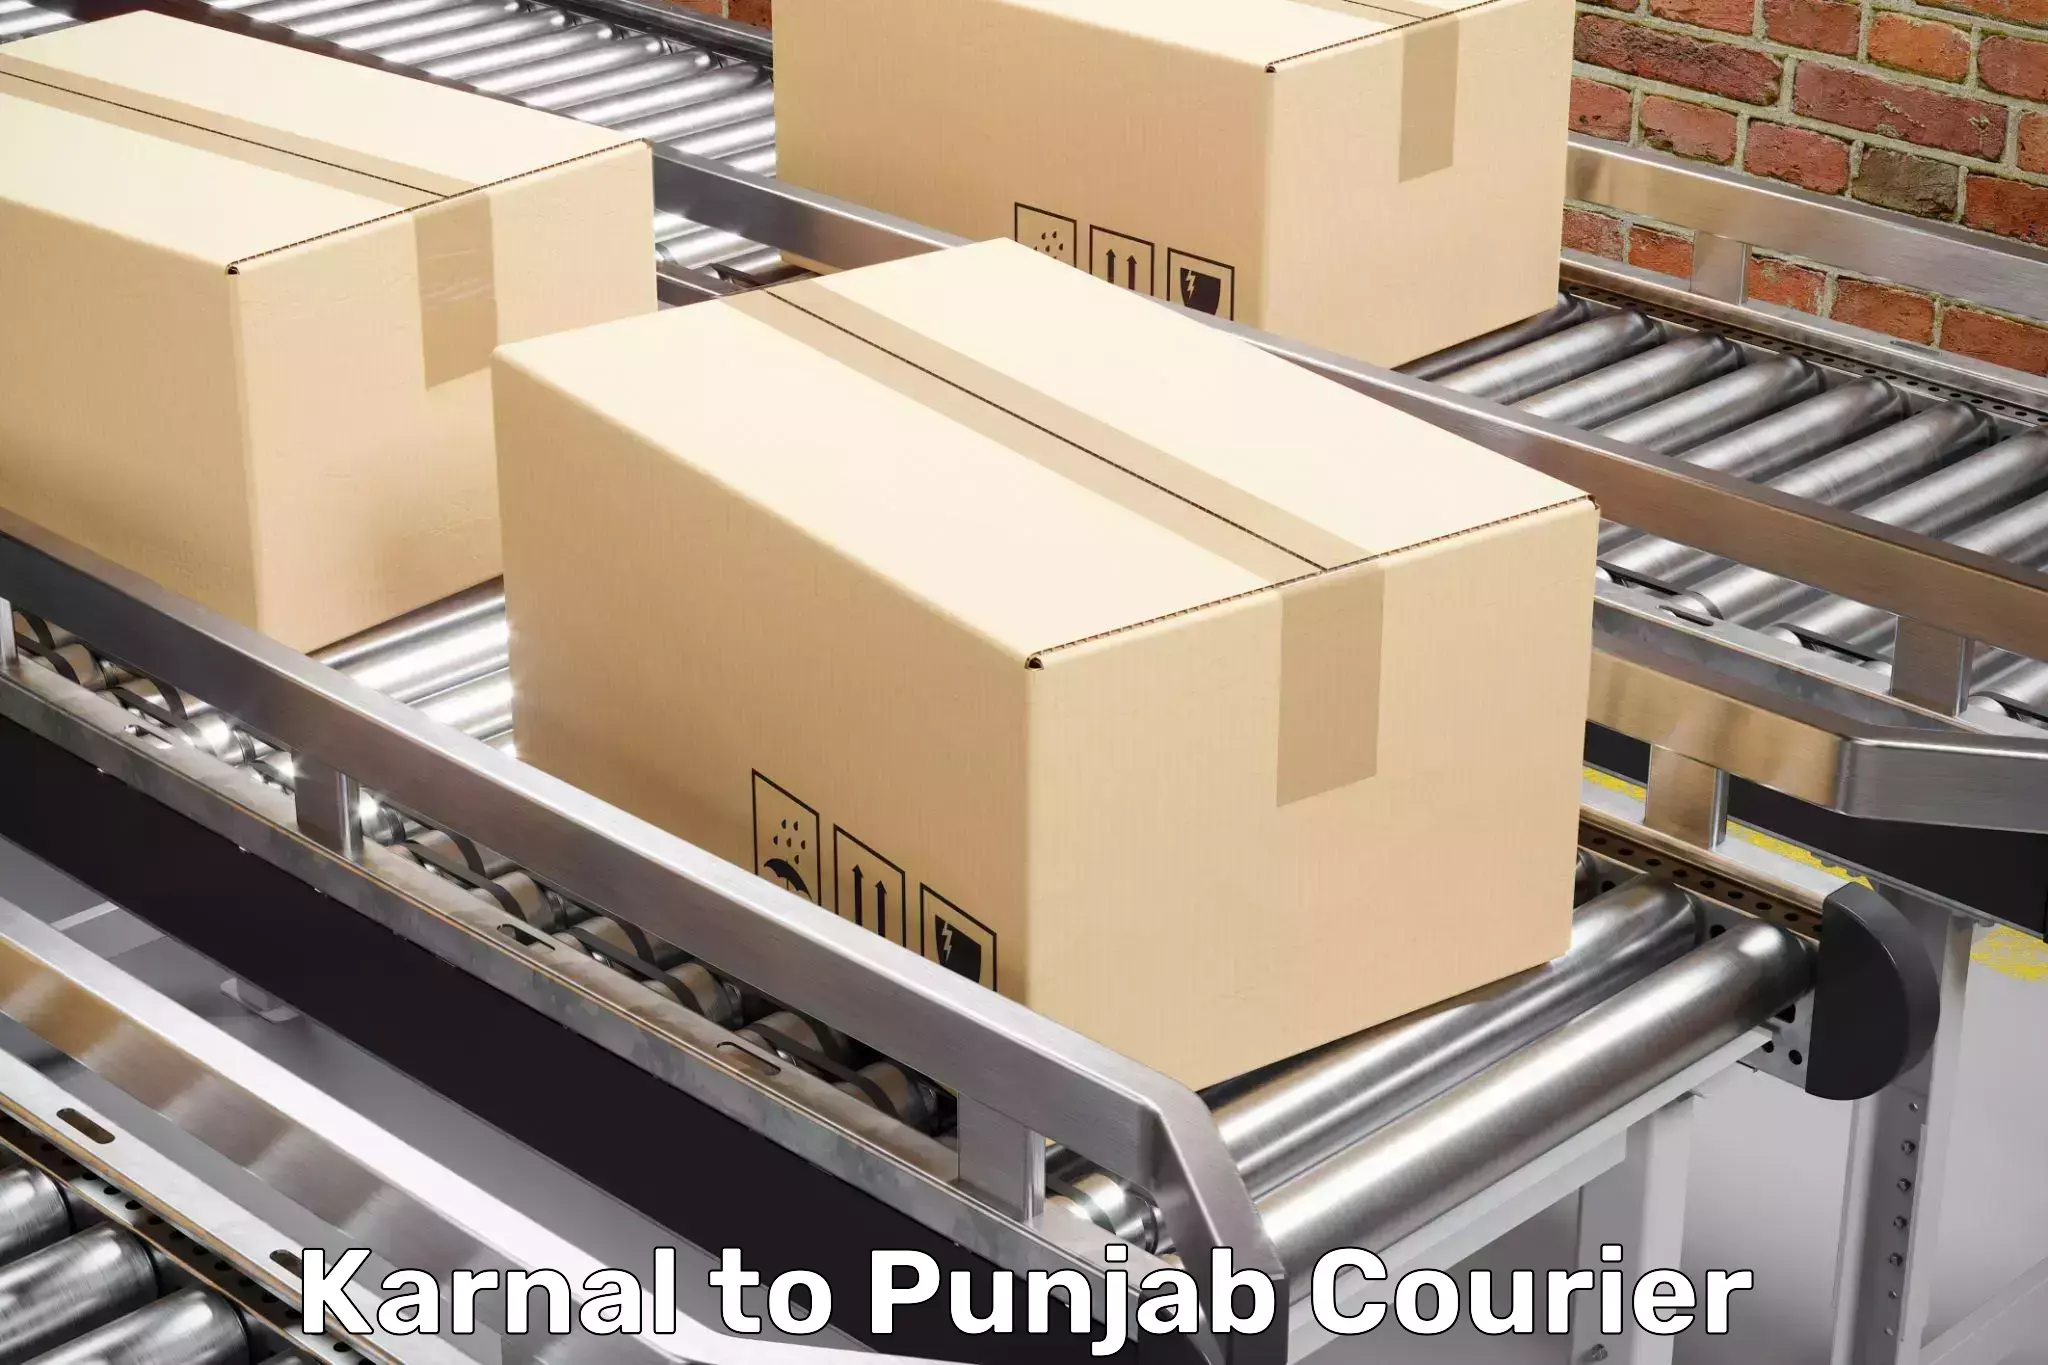 Furniture moving experts Karnal to Nangal